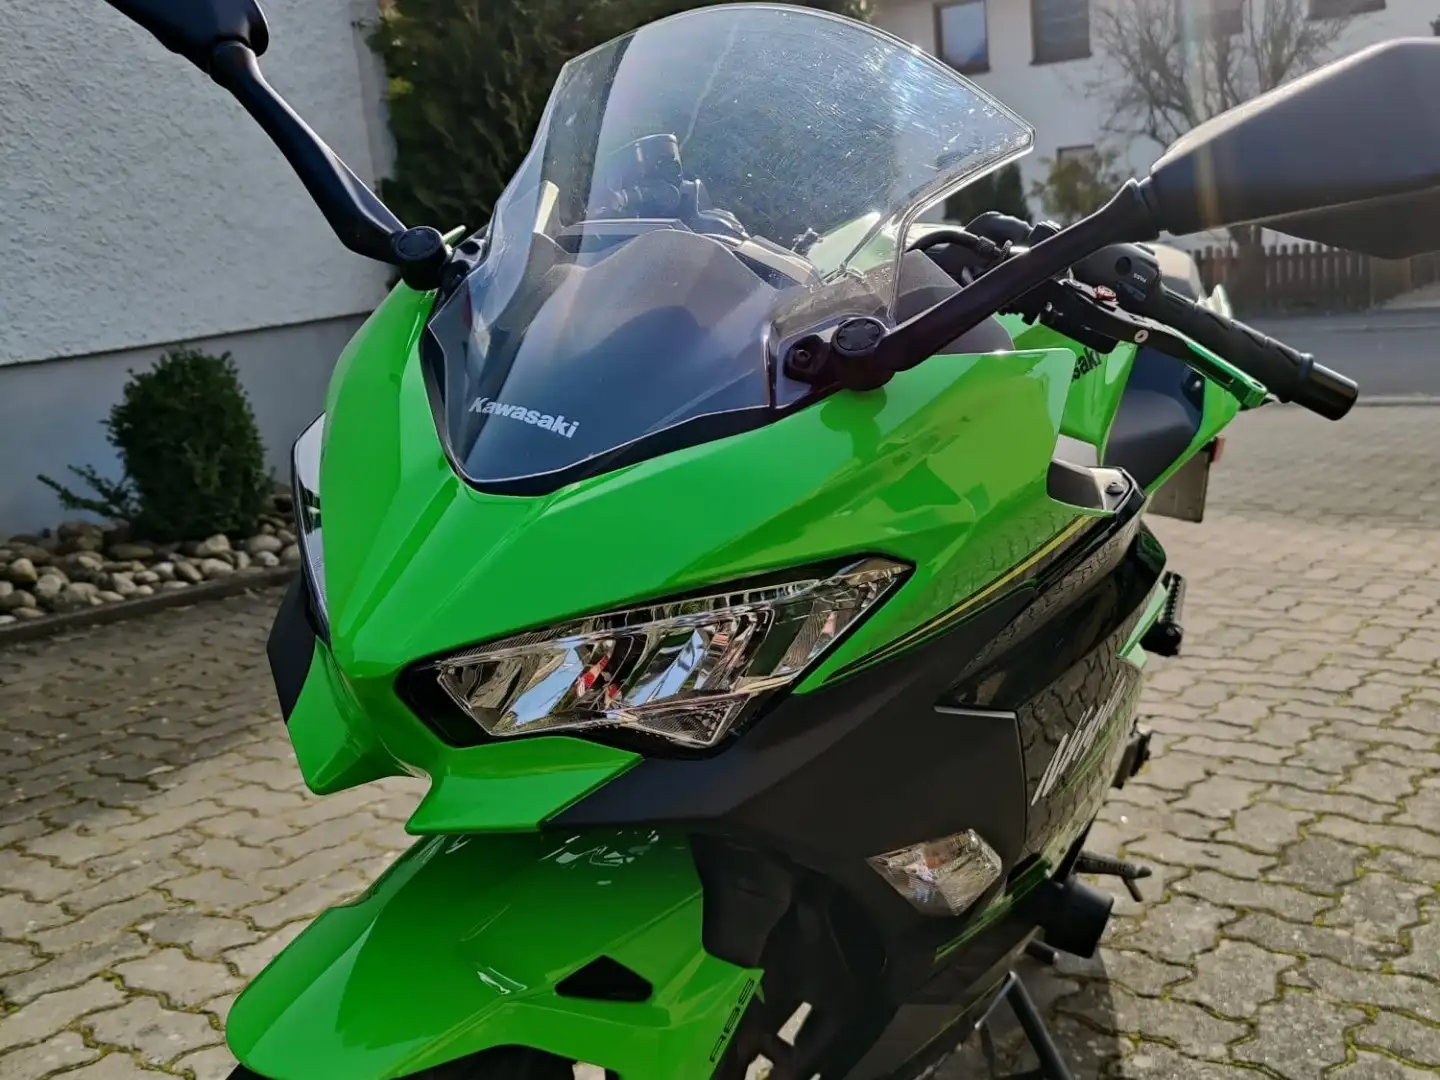 Kawasaki Ninja 400 Green - 2